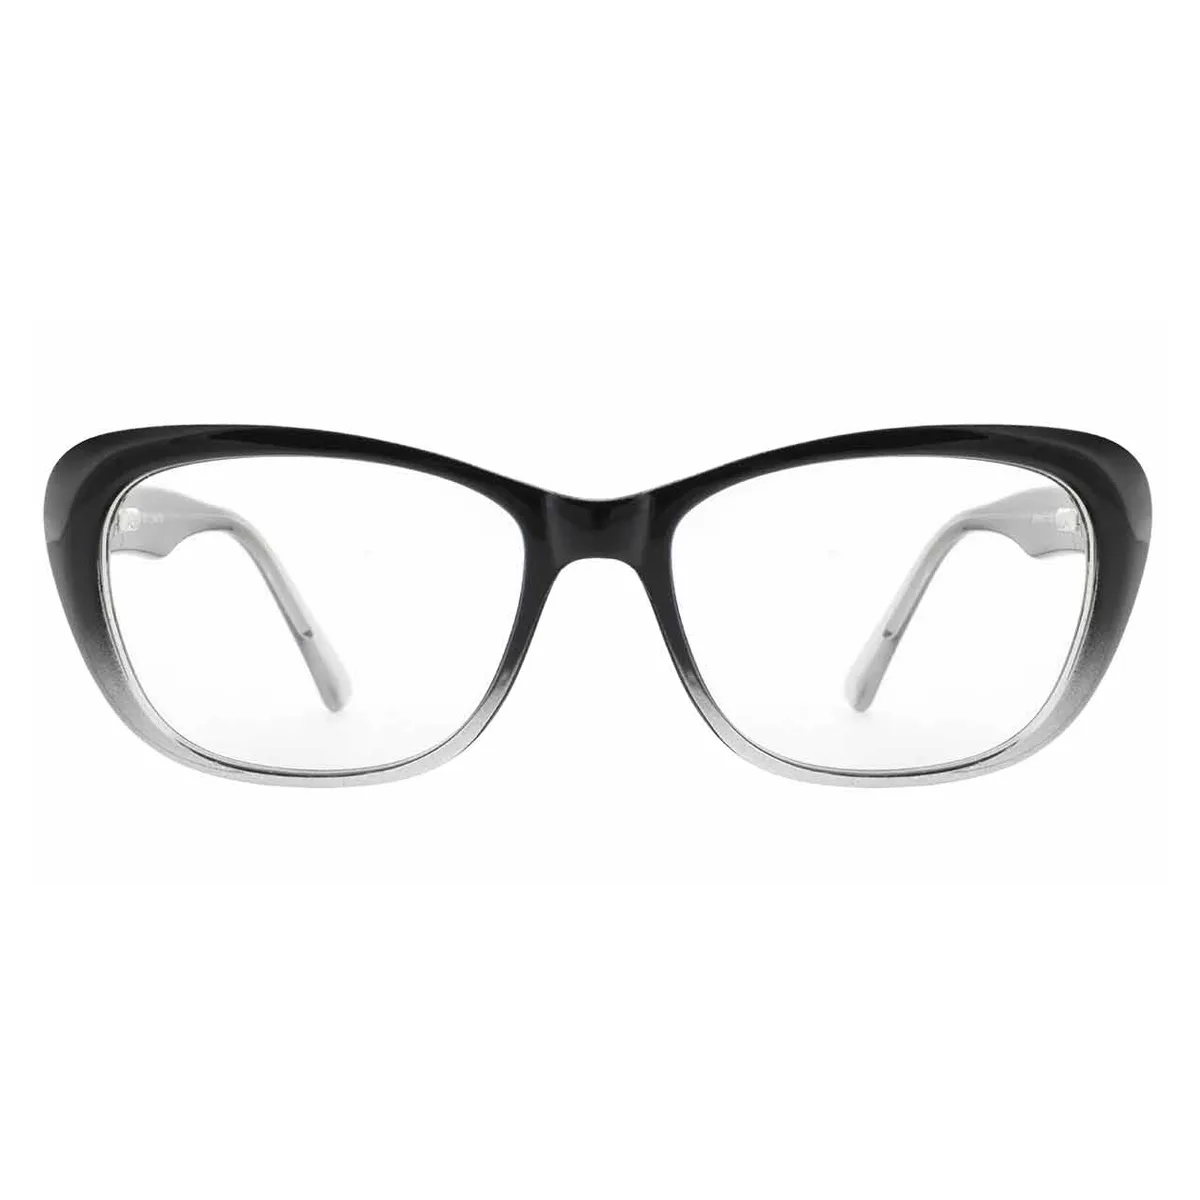 Business Square Black-Blue  Reading Glasses for Women